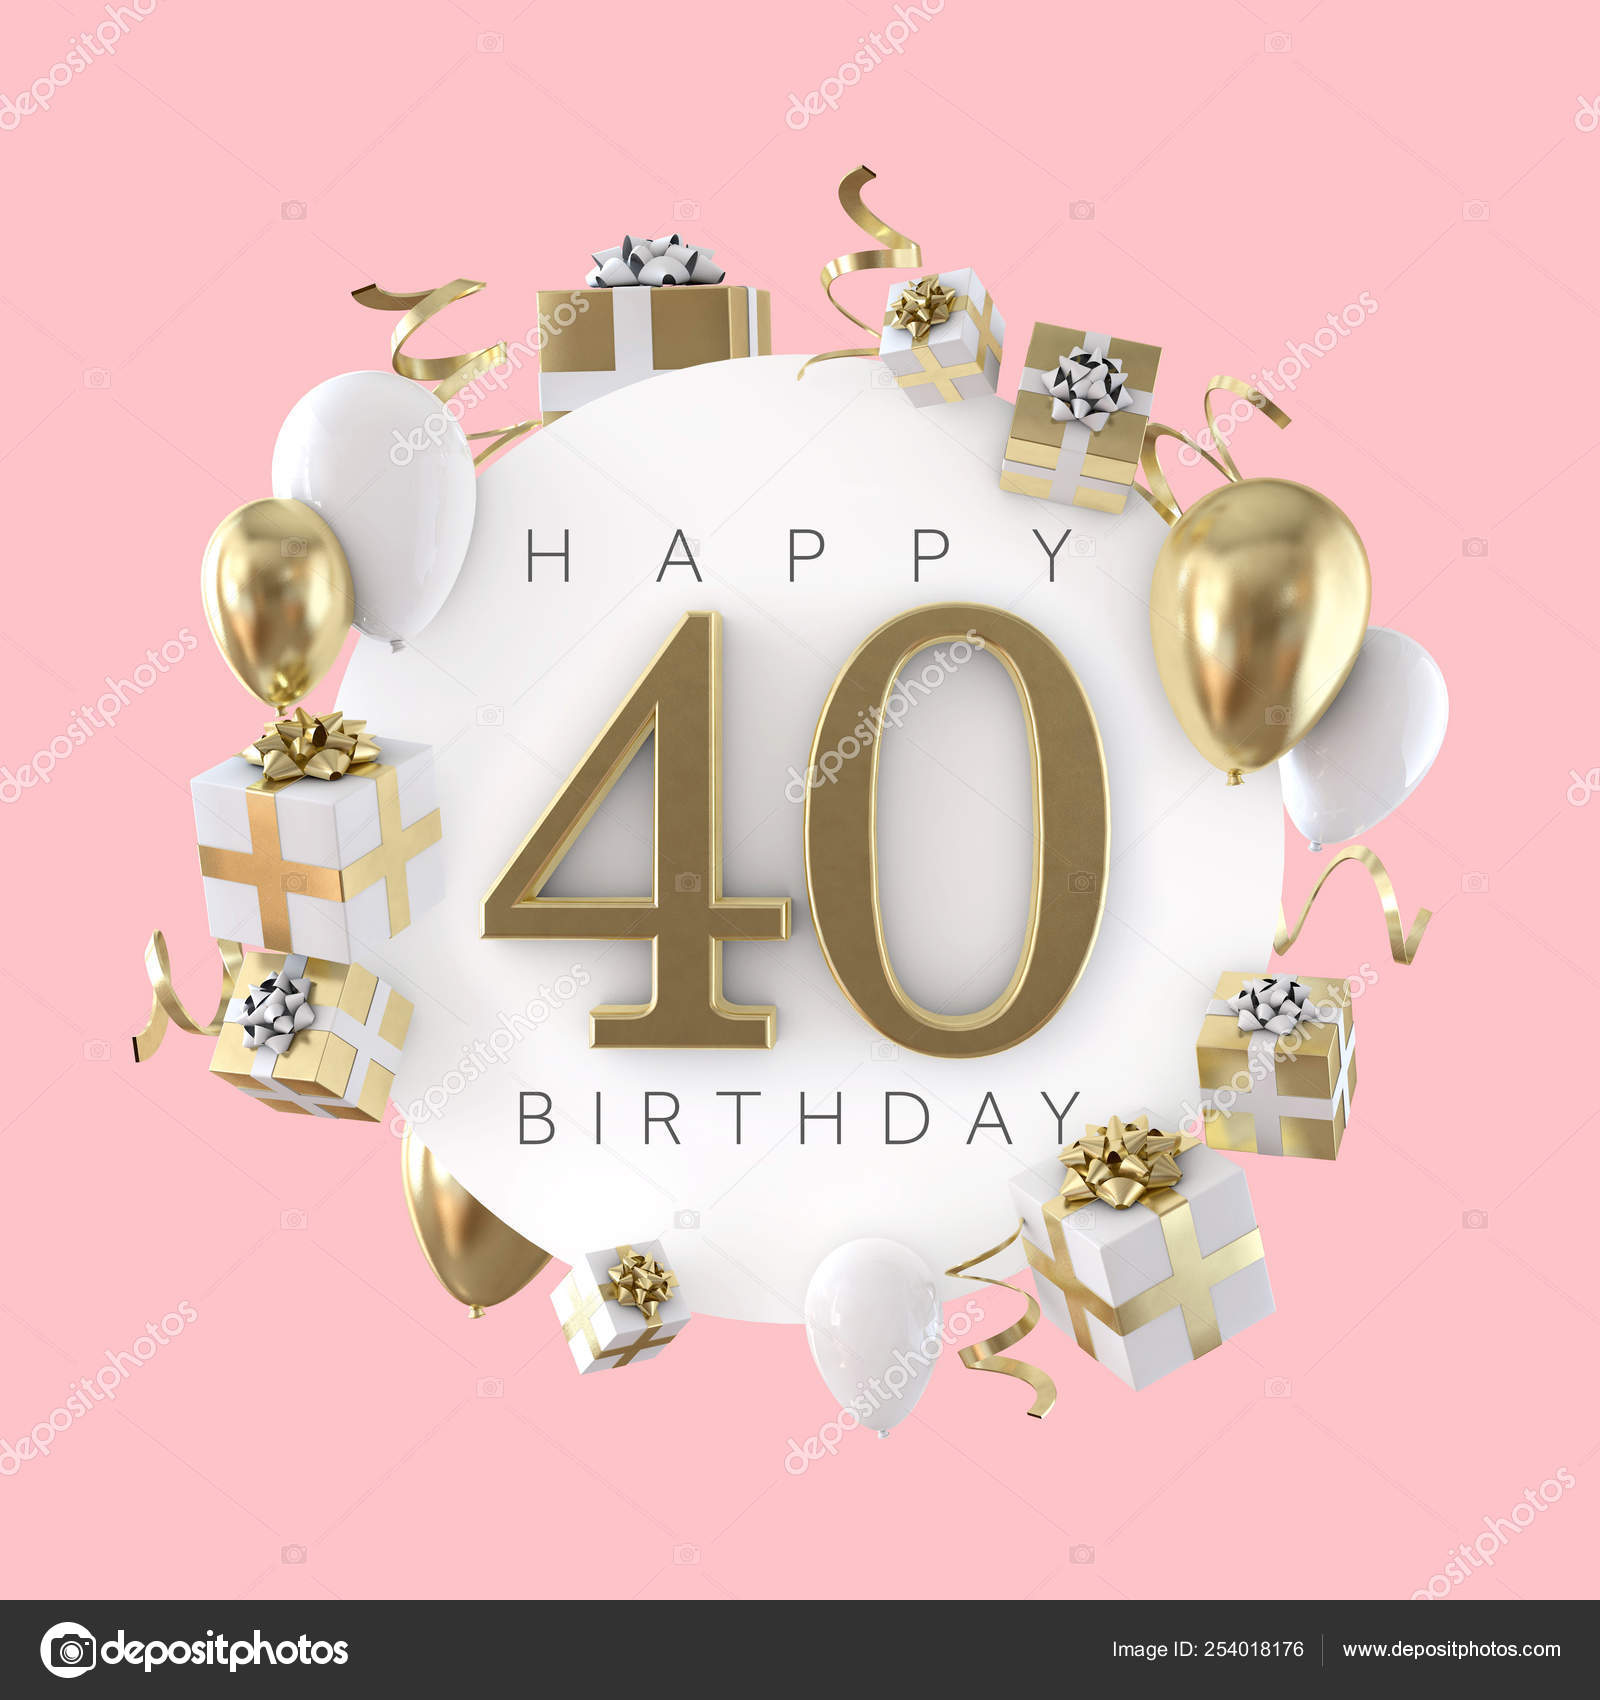 40 Urodziny Fotografie Zdjecia Stockowe 40 Urodziny Obrazy Royalty Free